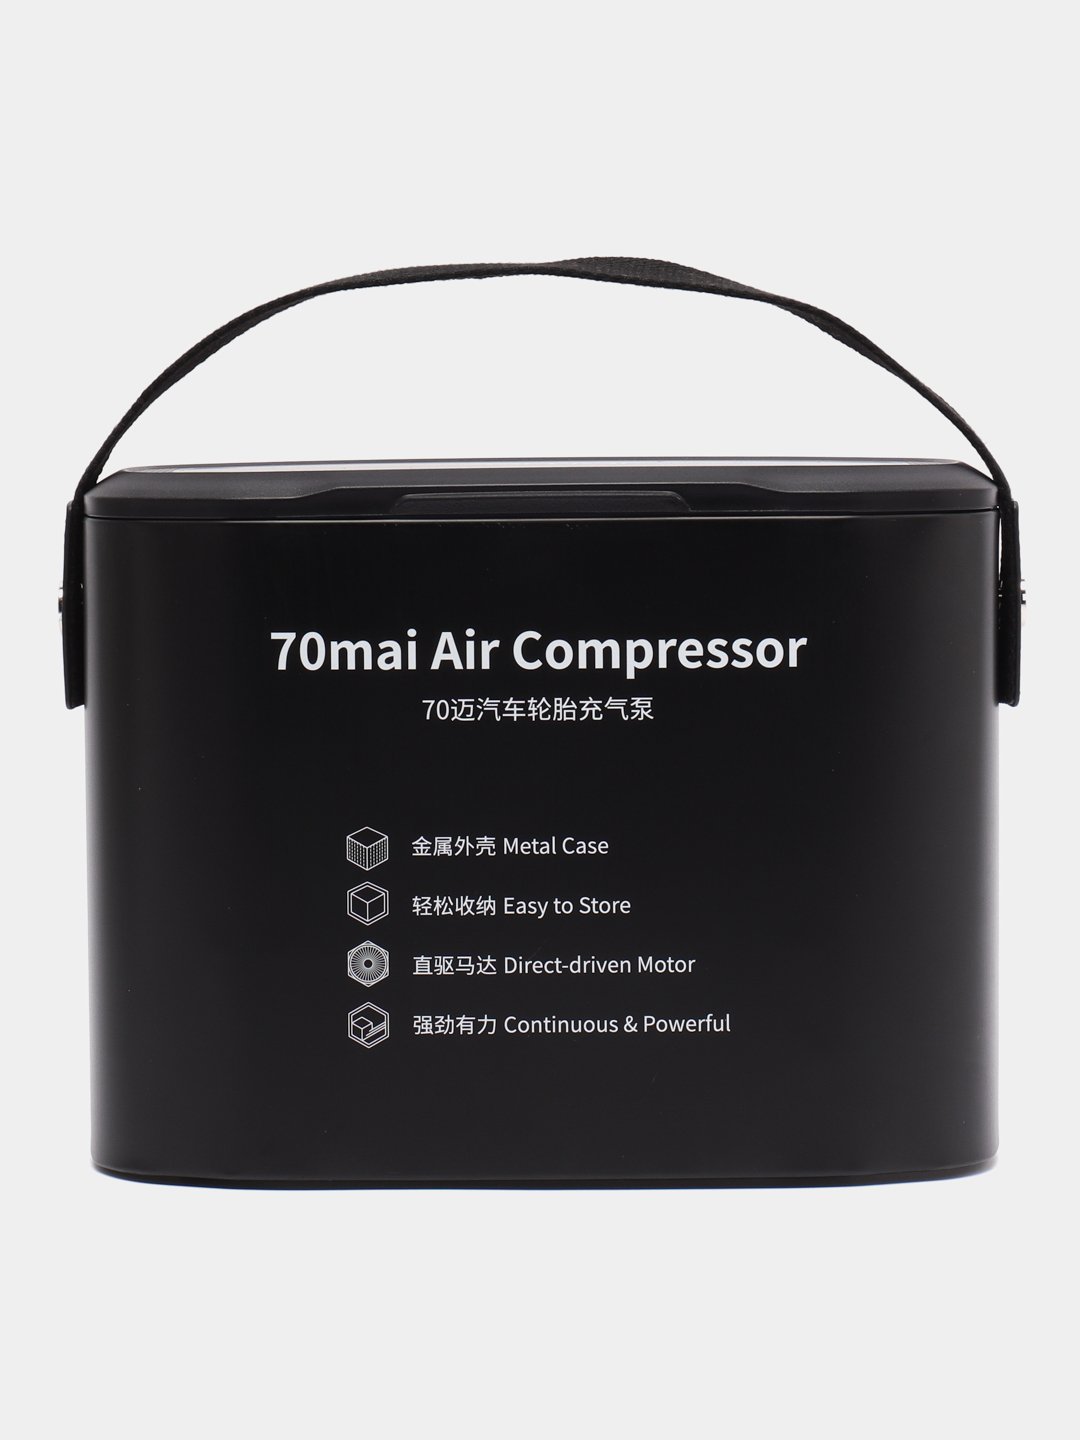 Автомобильный компрессор 70mai air compressor tp01. Xiaomi 70mai Air Compressor MIDRIVE tp01eu. Компрессор Ксиаоми.